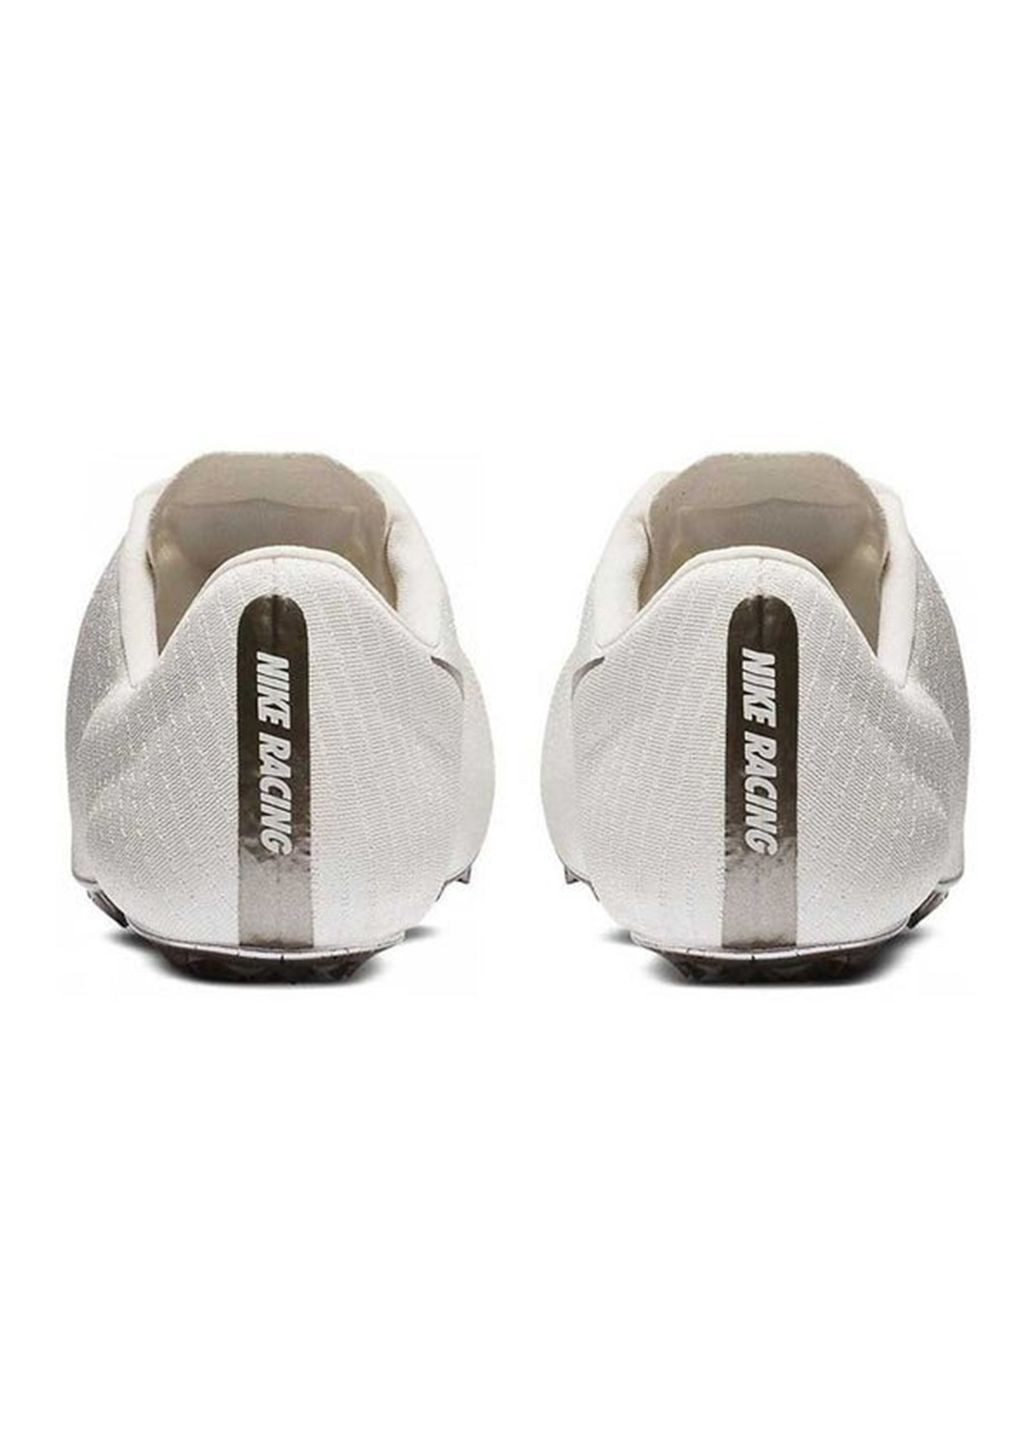 Белые беговые шиповки Nike Zoom Superfly Elite